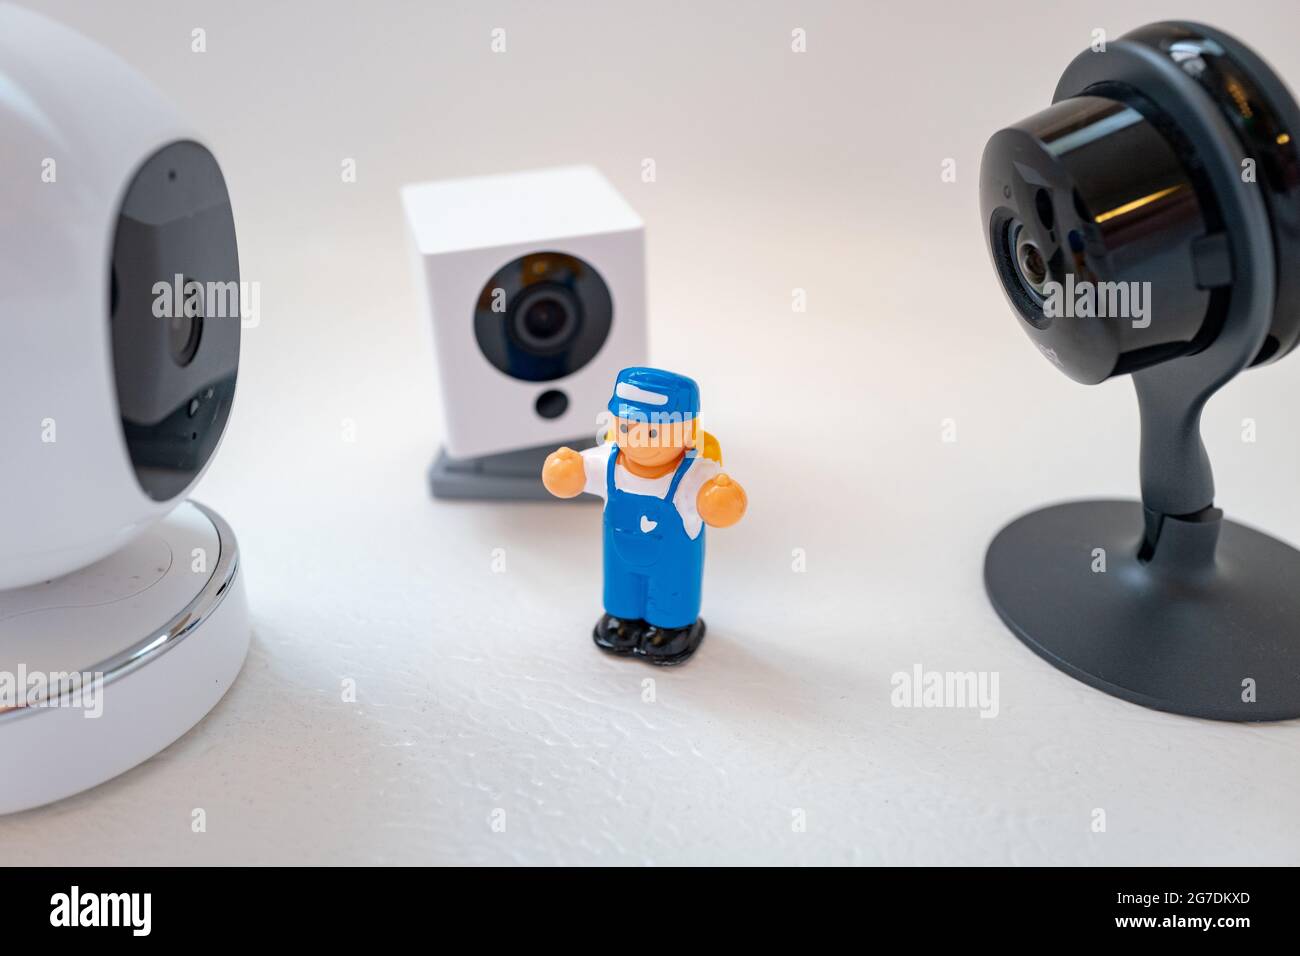 Imagen ilustrativa de un juguete plástico de un niño rodeado de cámaras de seguridad de Google Nest, Simcam y Wyze sobre un fondo blanco, sugiriendo vigilancia masiva, en San Ramon, California, noviembre de 20, 2020. () Foto de stock